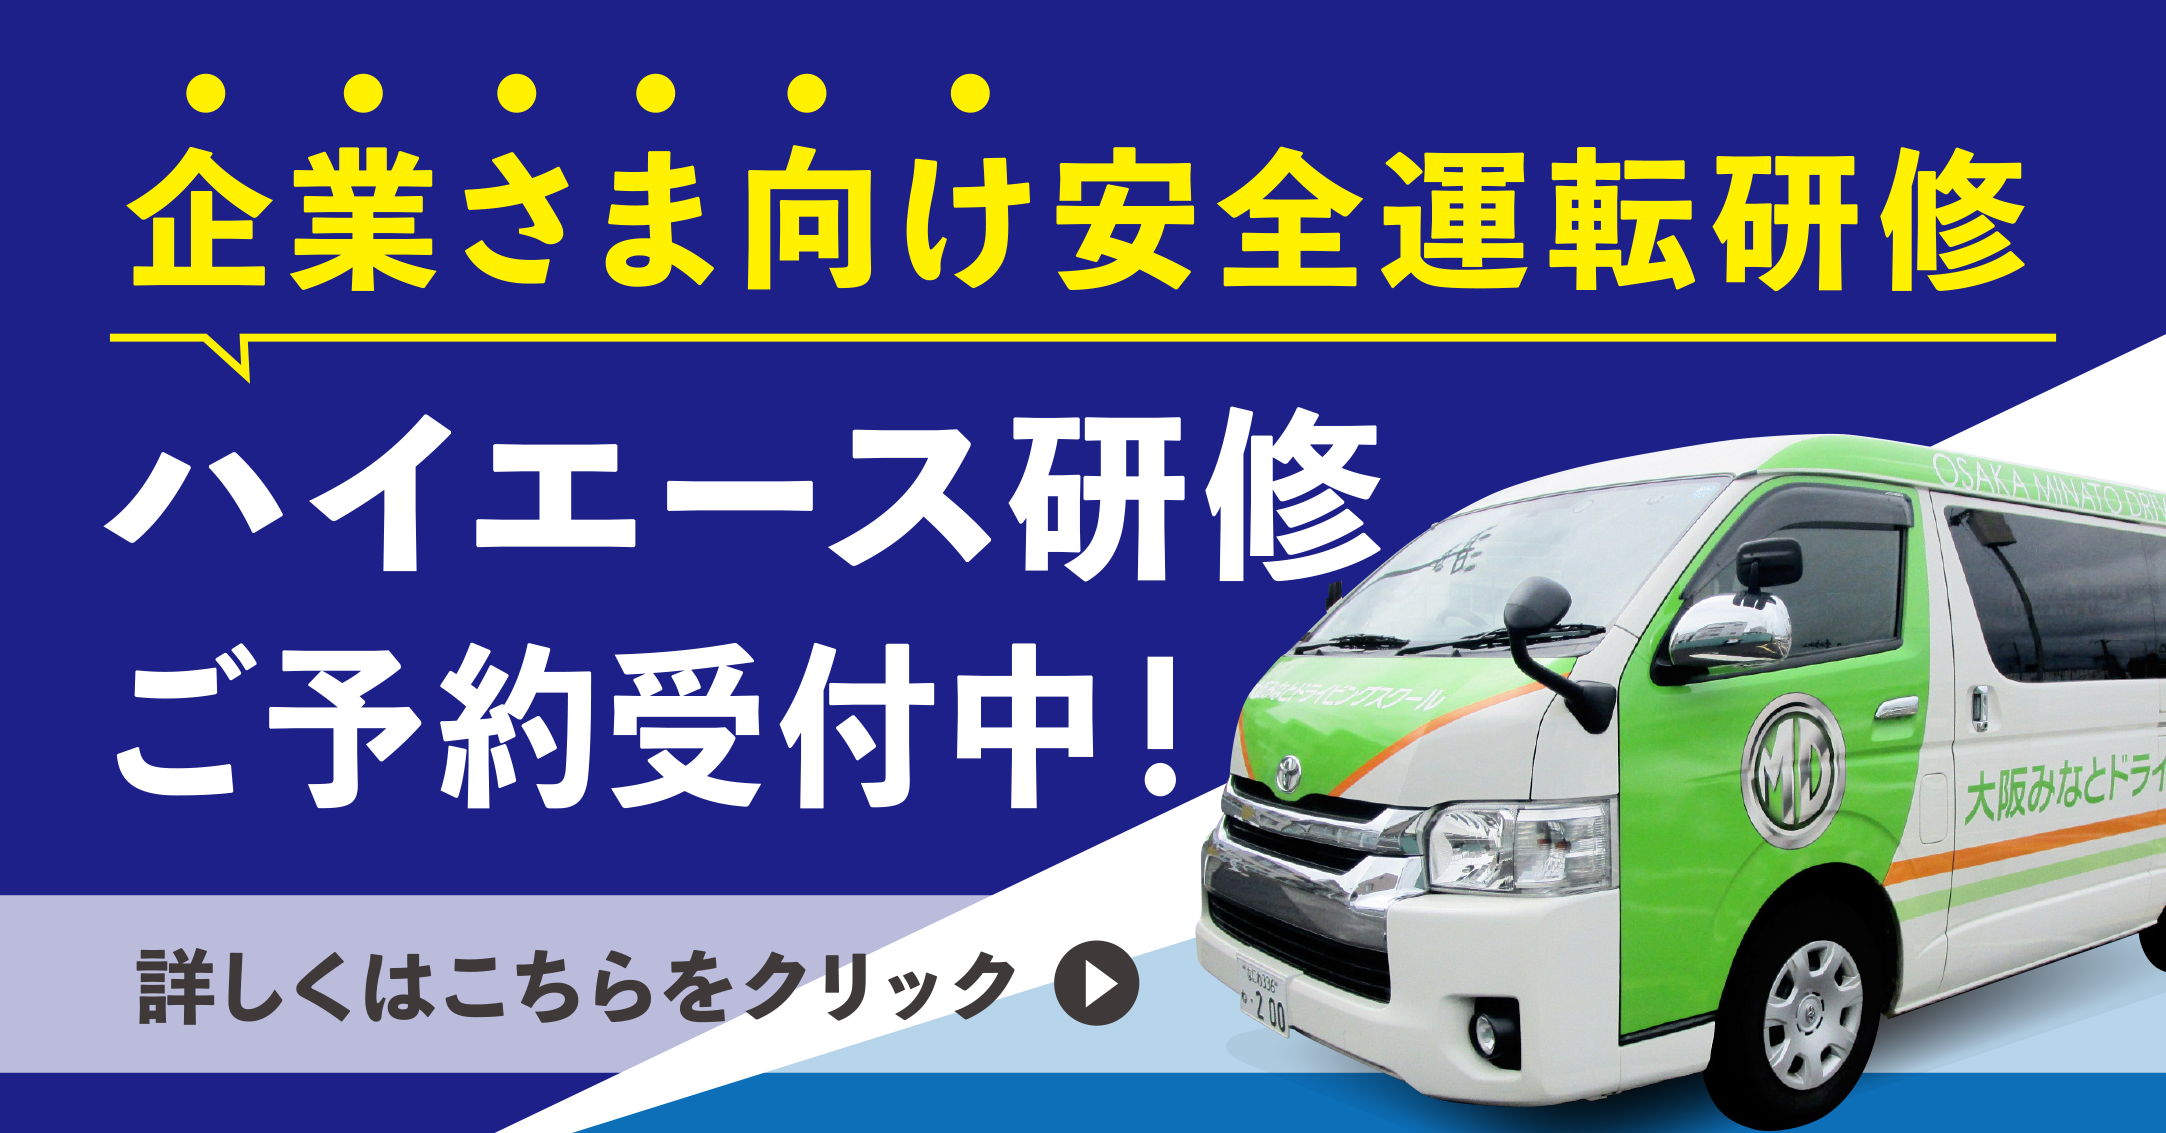 大阪の自動車教習所 大阪みなとドライビングスクール